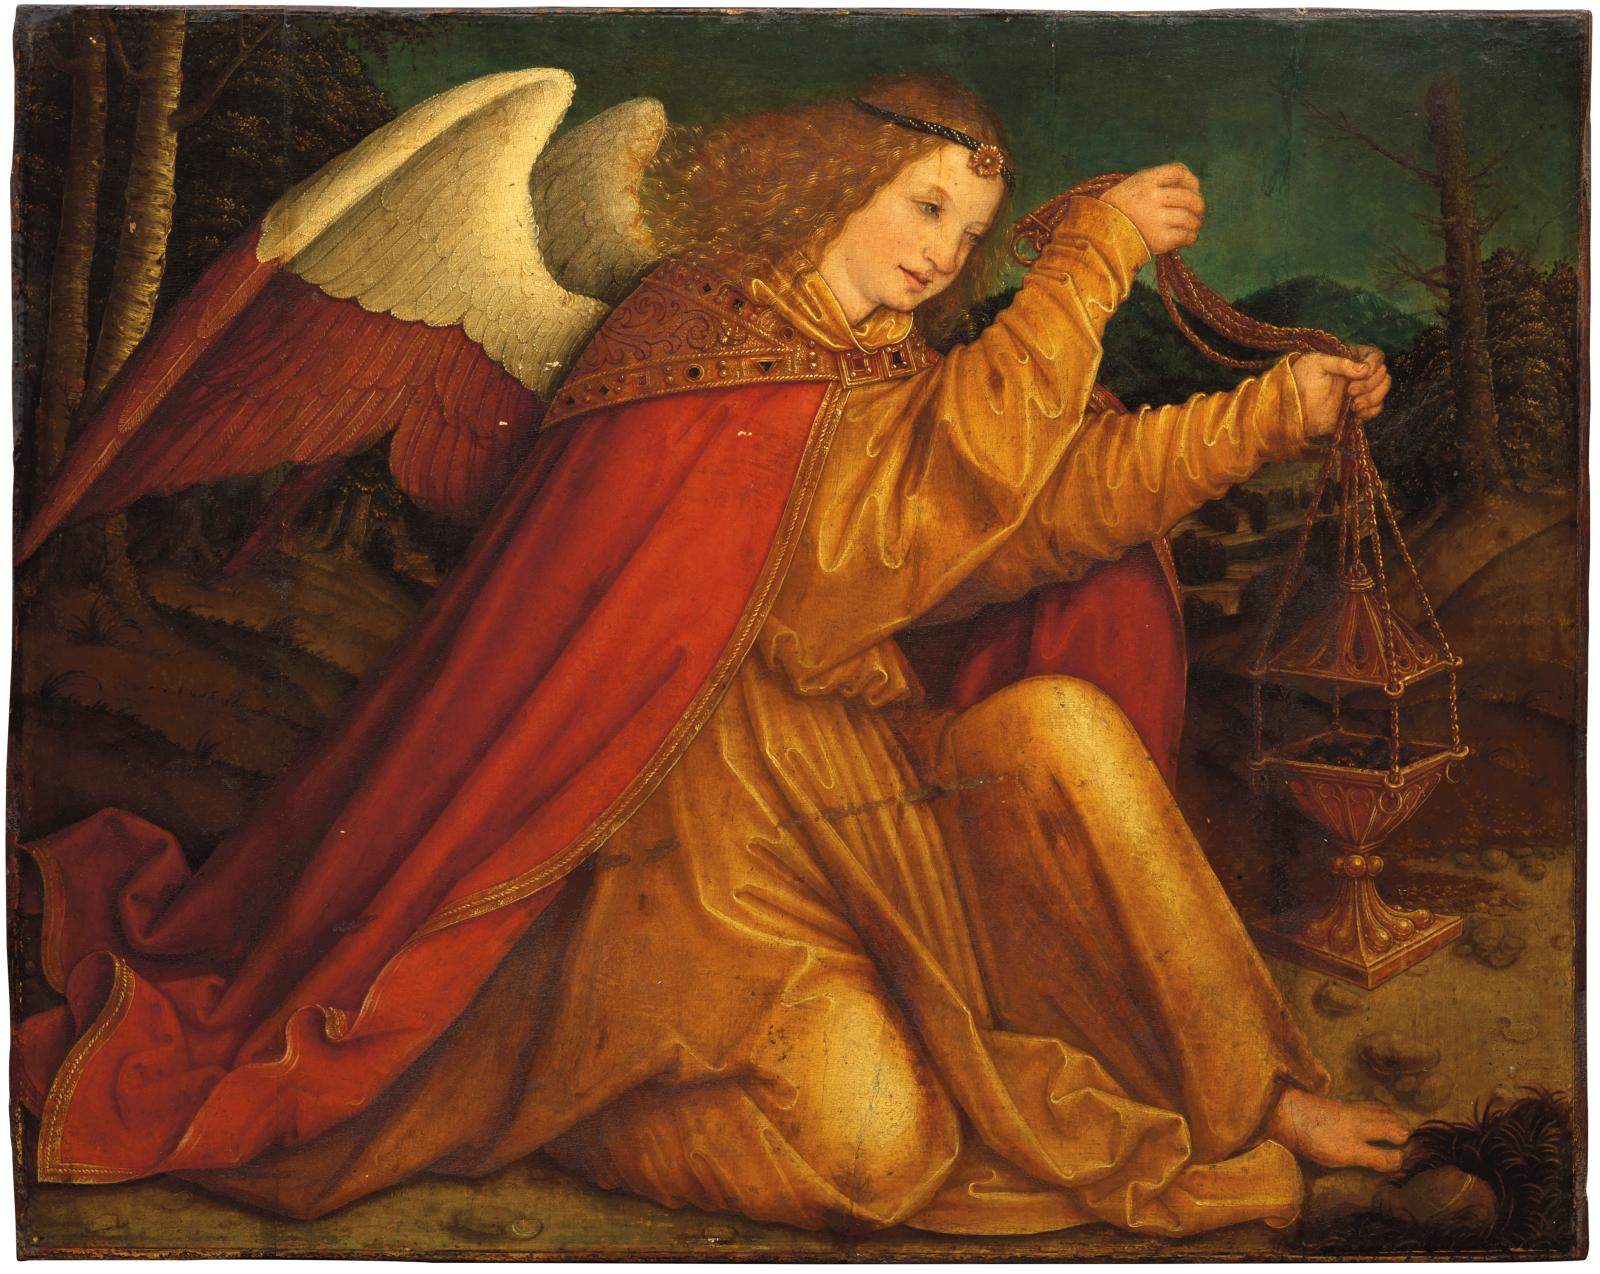 France, Bernhard Strigel's rare Angel sold for 3.5 million euros